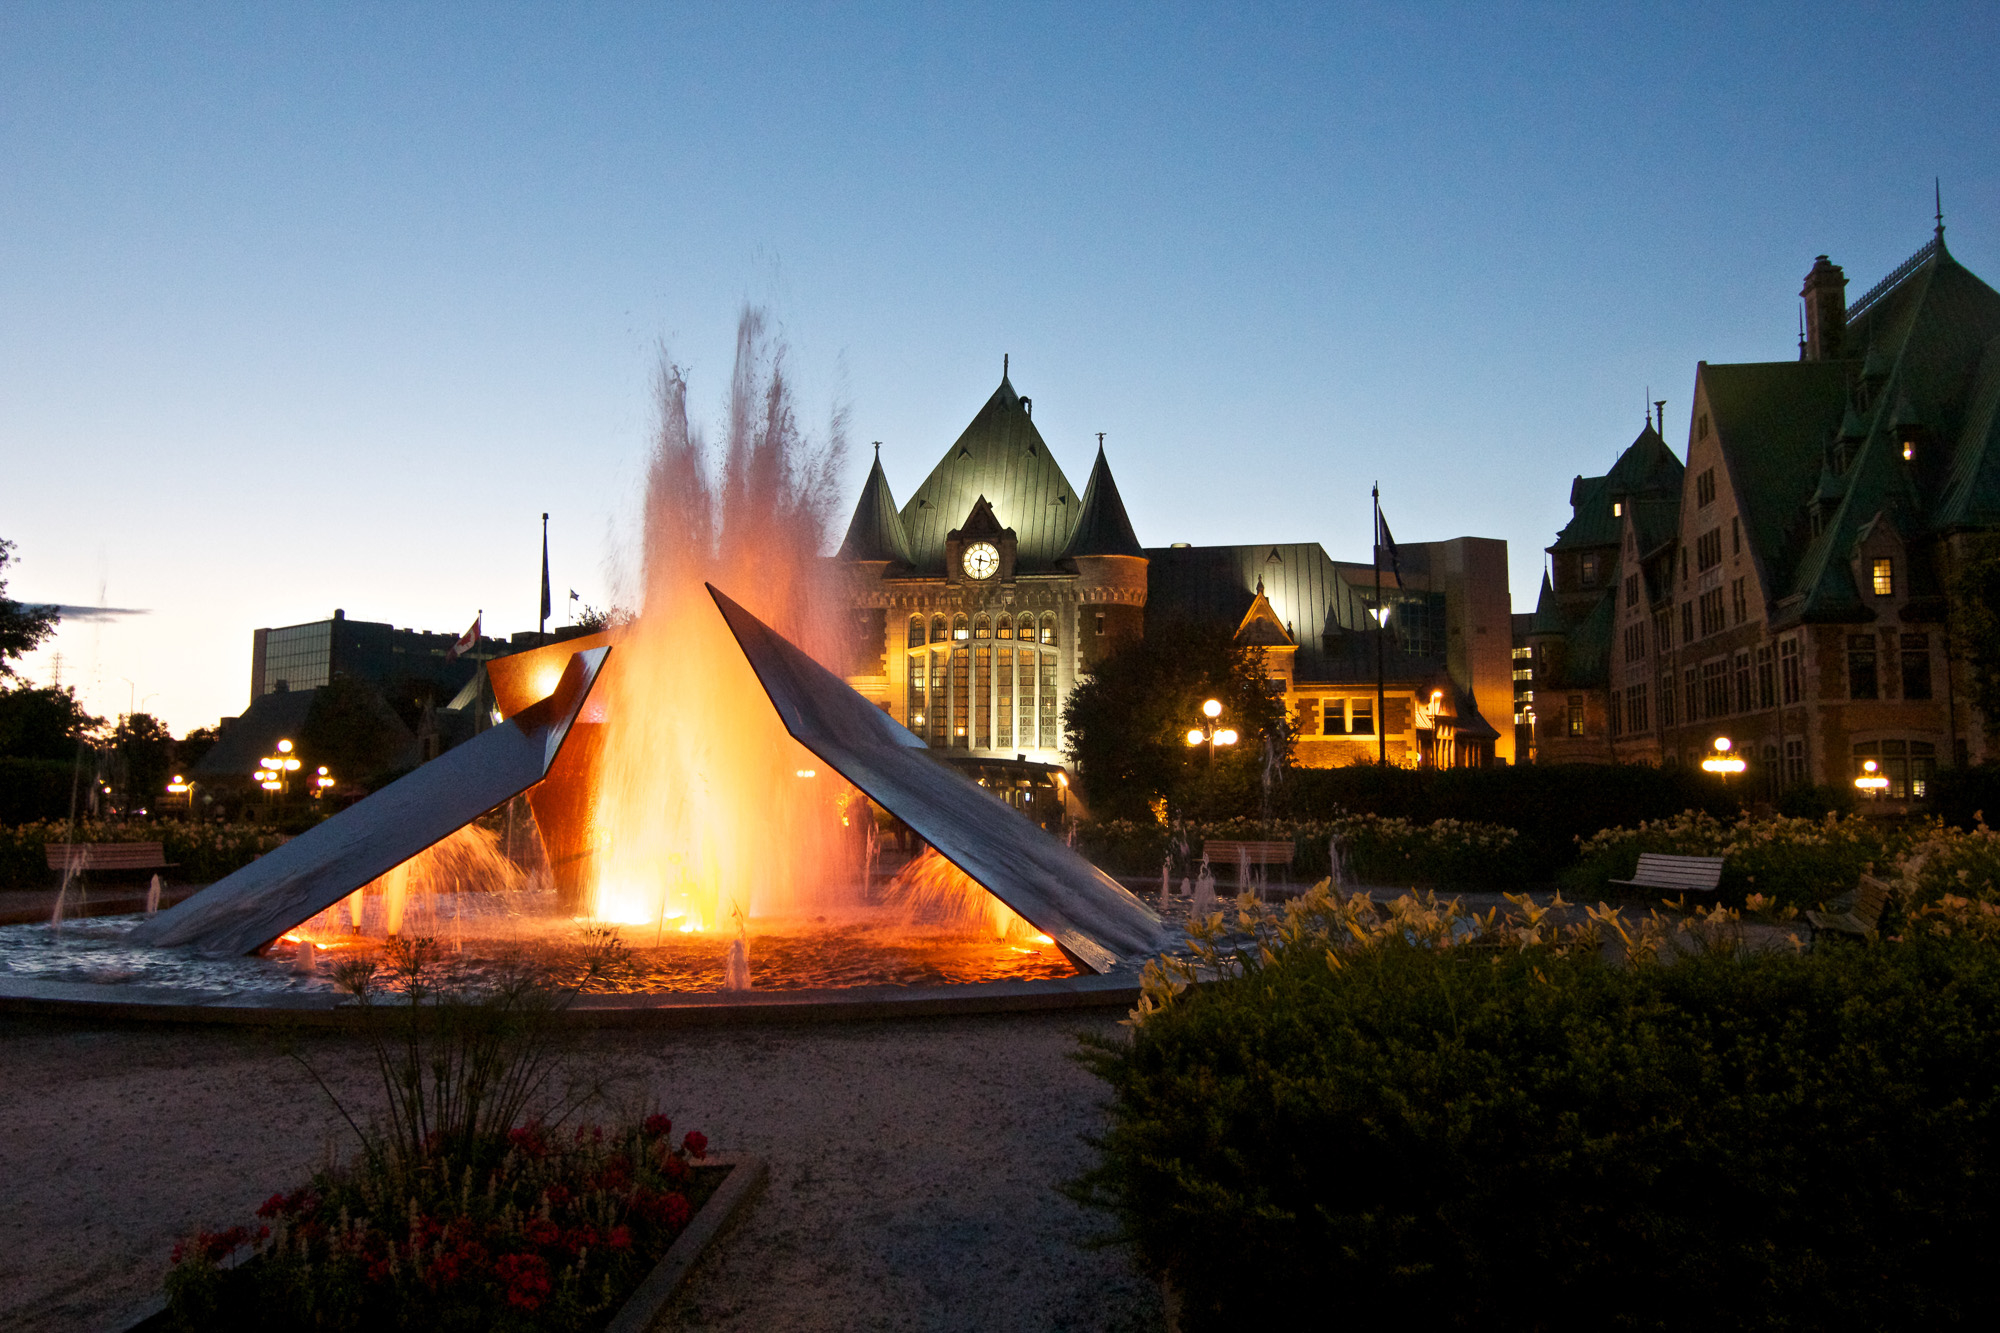 Fairmont Le ChaÌteau Frontenac, Quebec City, Canada. Photo copyright Miceli Productions. http://MiceliProductions.com